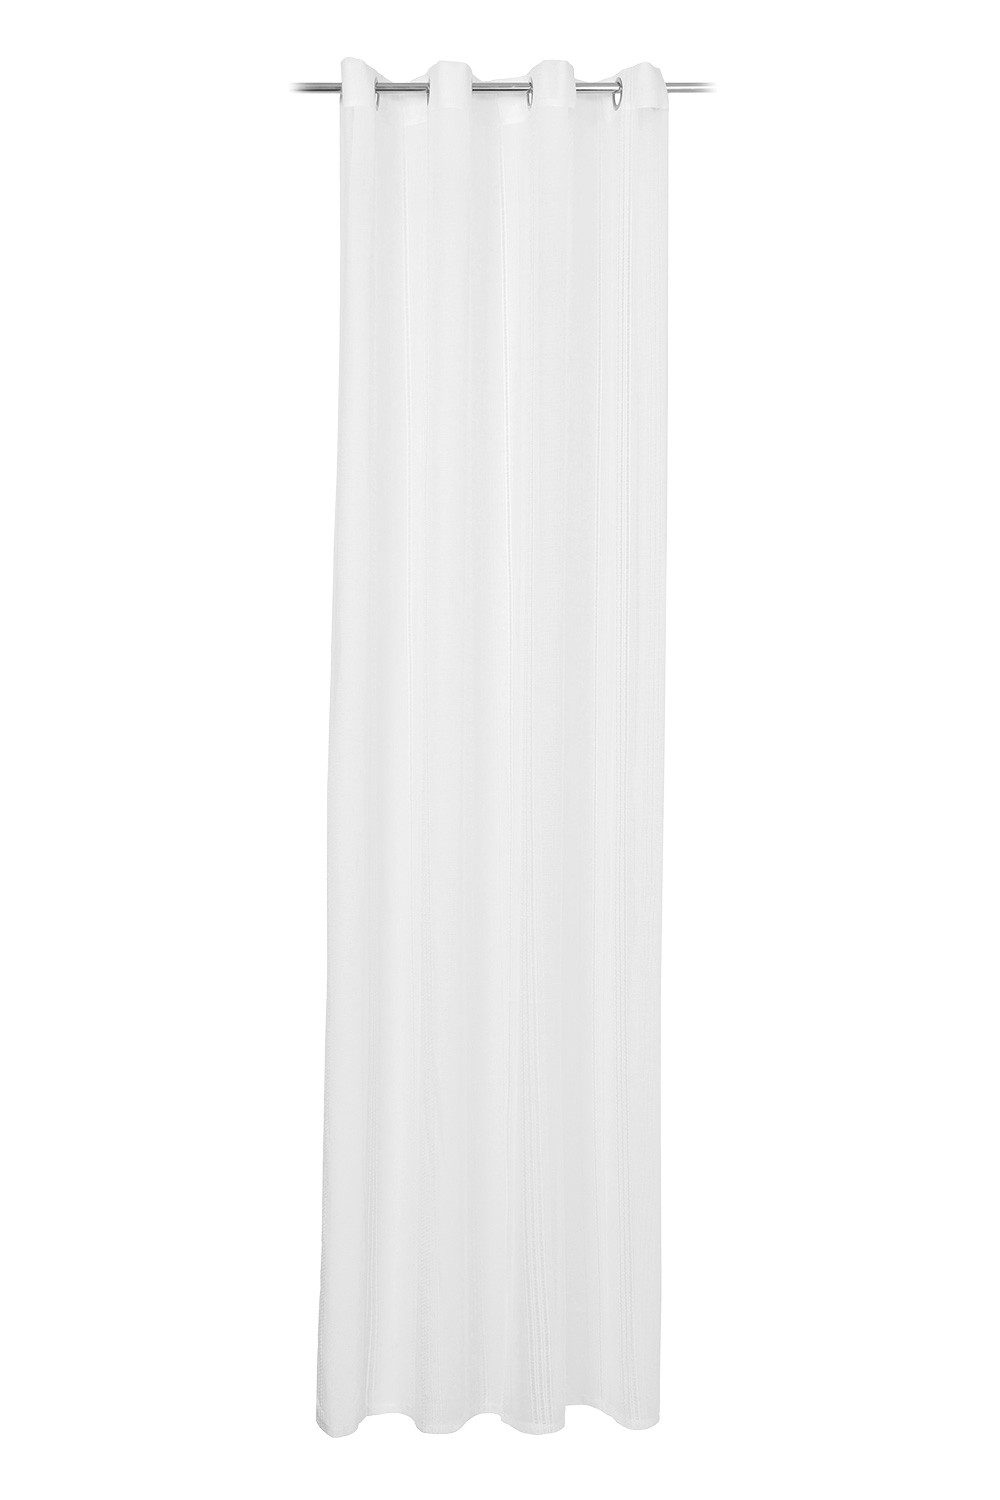 Vorhang MORENA, 140 x 245 cm, Weiß, Leinenoptik, Gözze, Ösen (1 St), halbtransparent, Polyester, Lochstickerei, Ösenschal